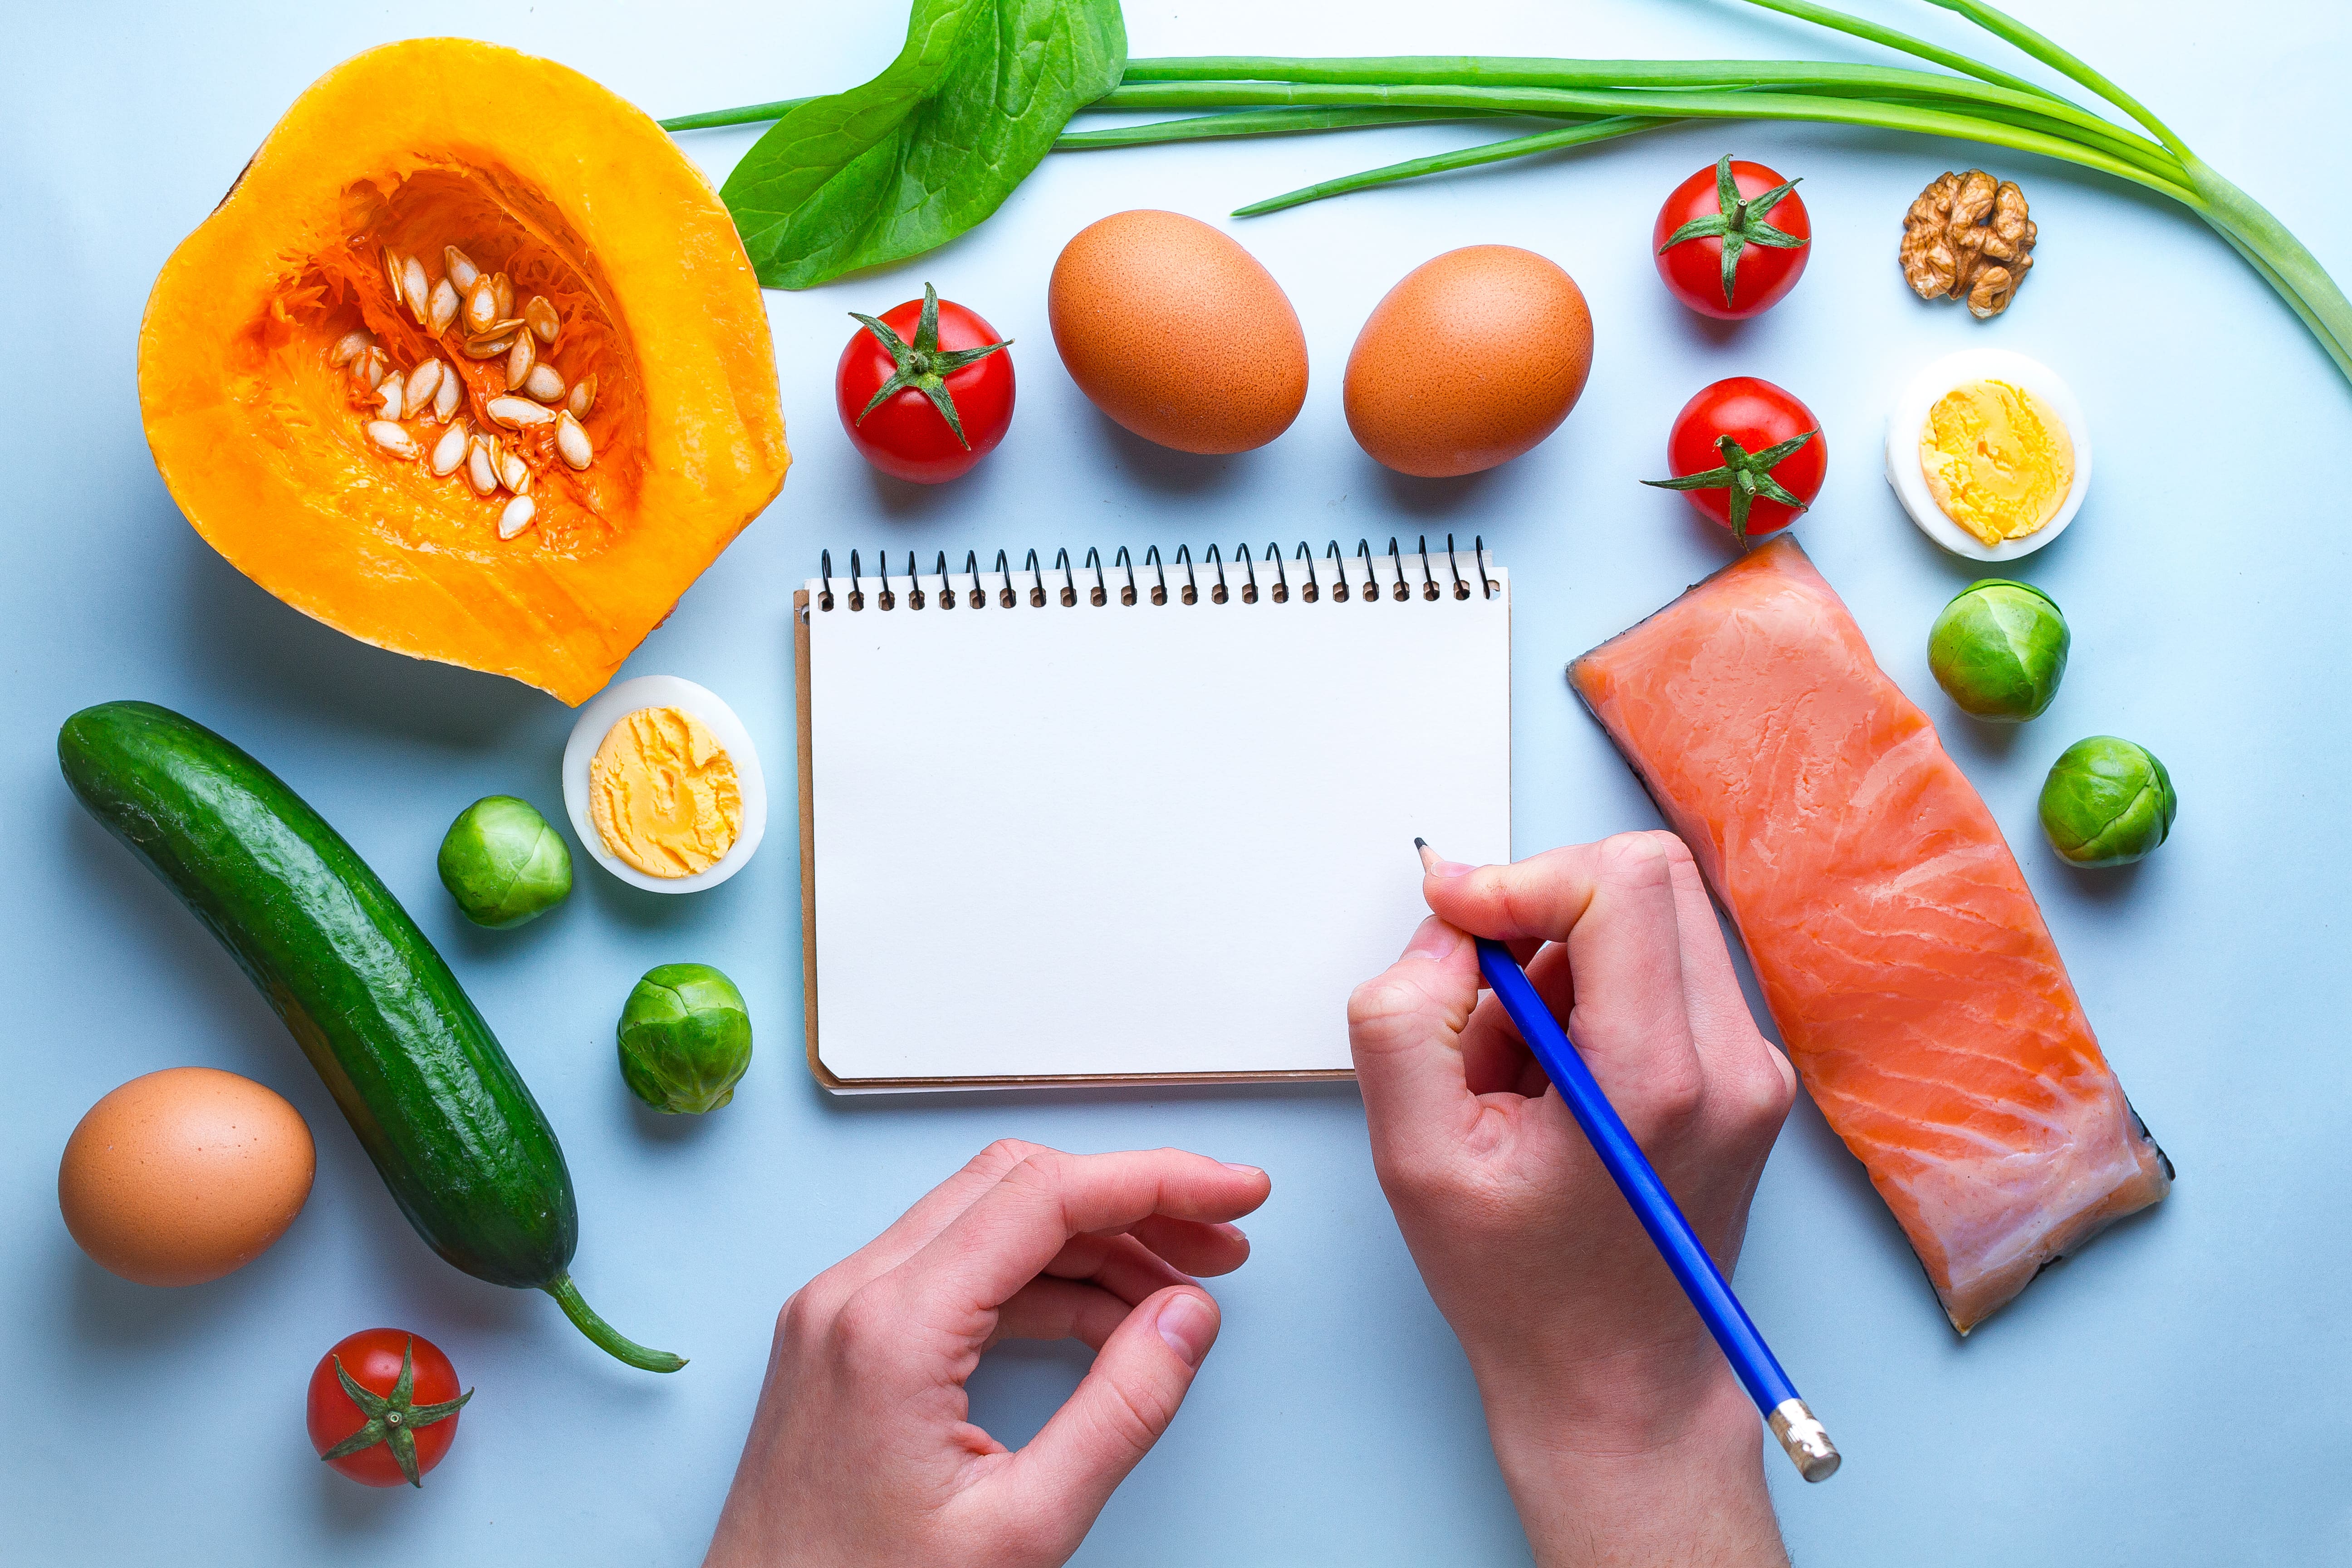 Ghid Dieta Ketogenică – Suplimente Keto, Meniu, Rezultate, Sfaturi Începători